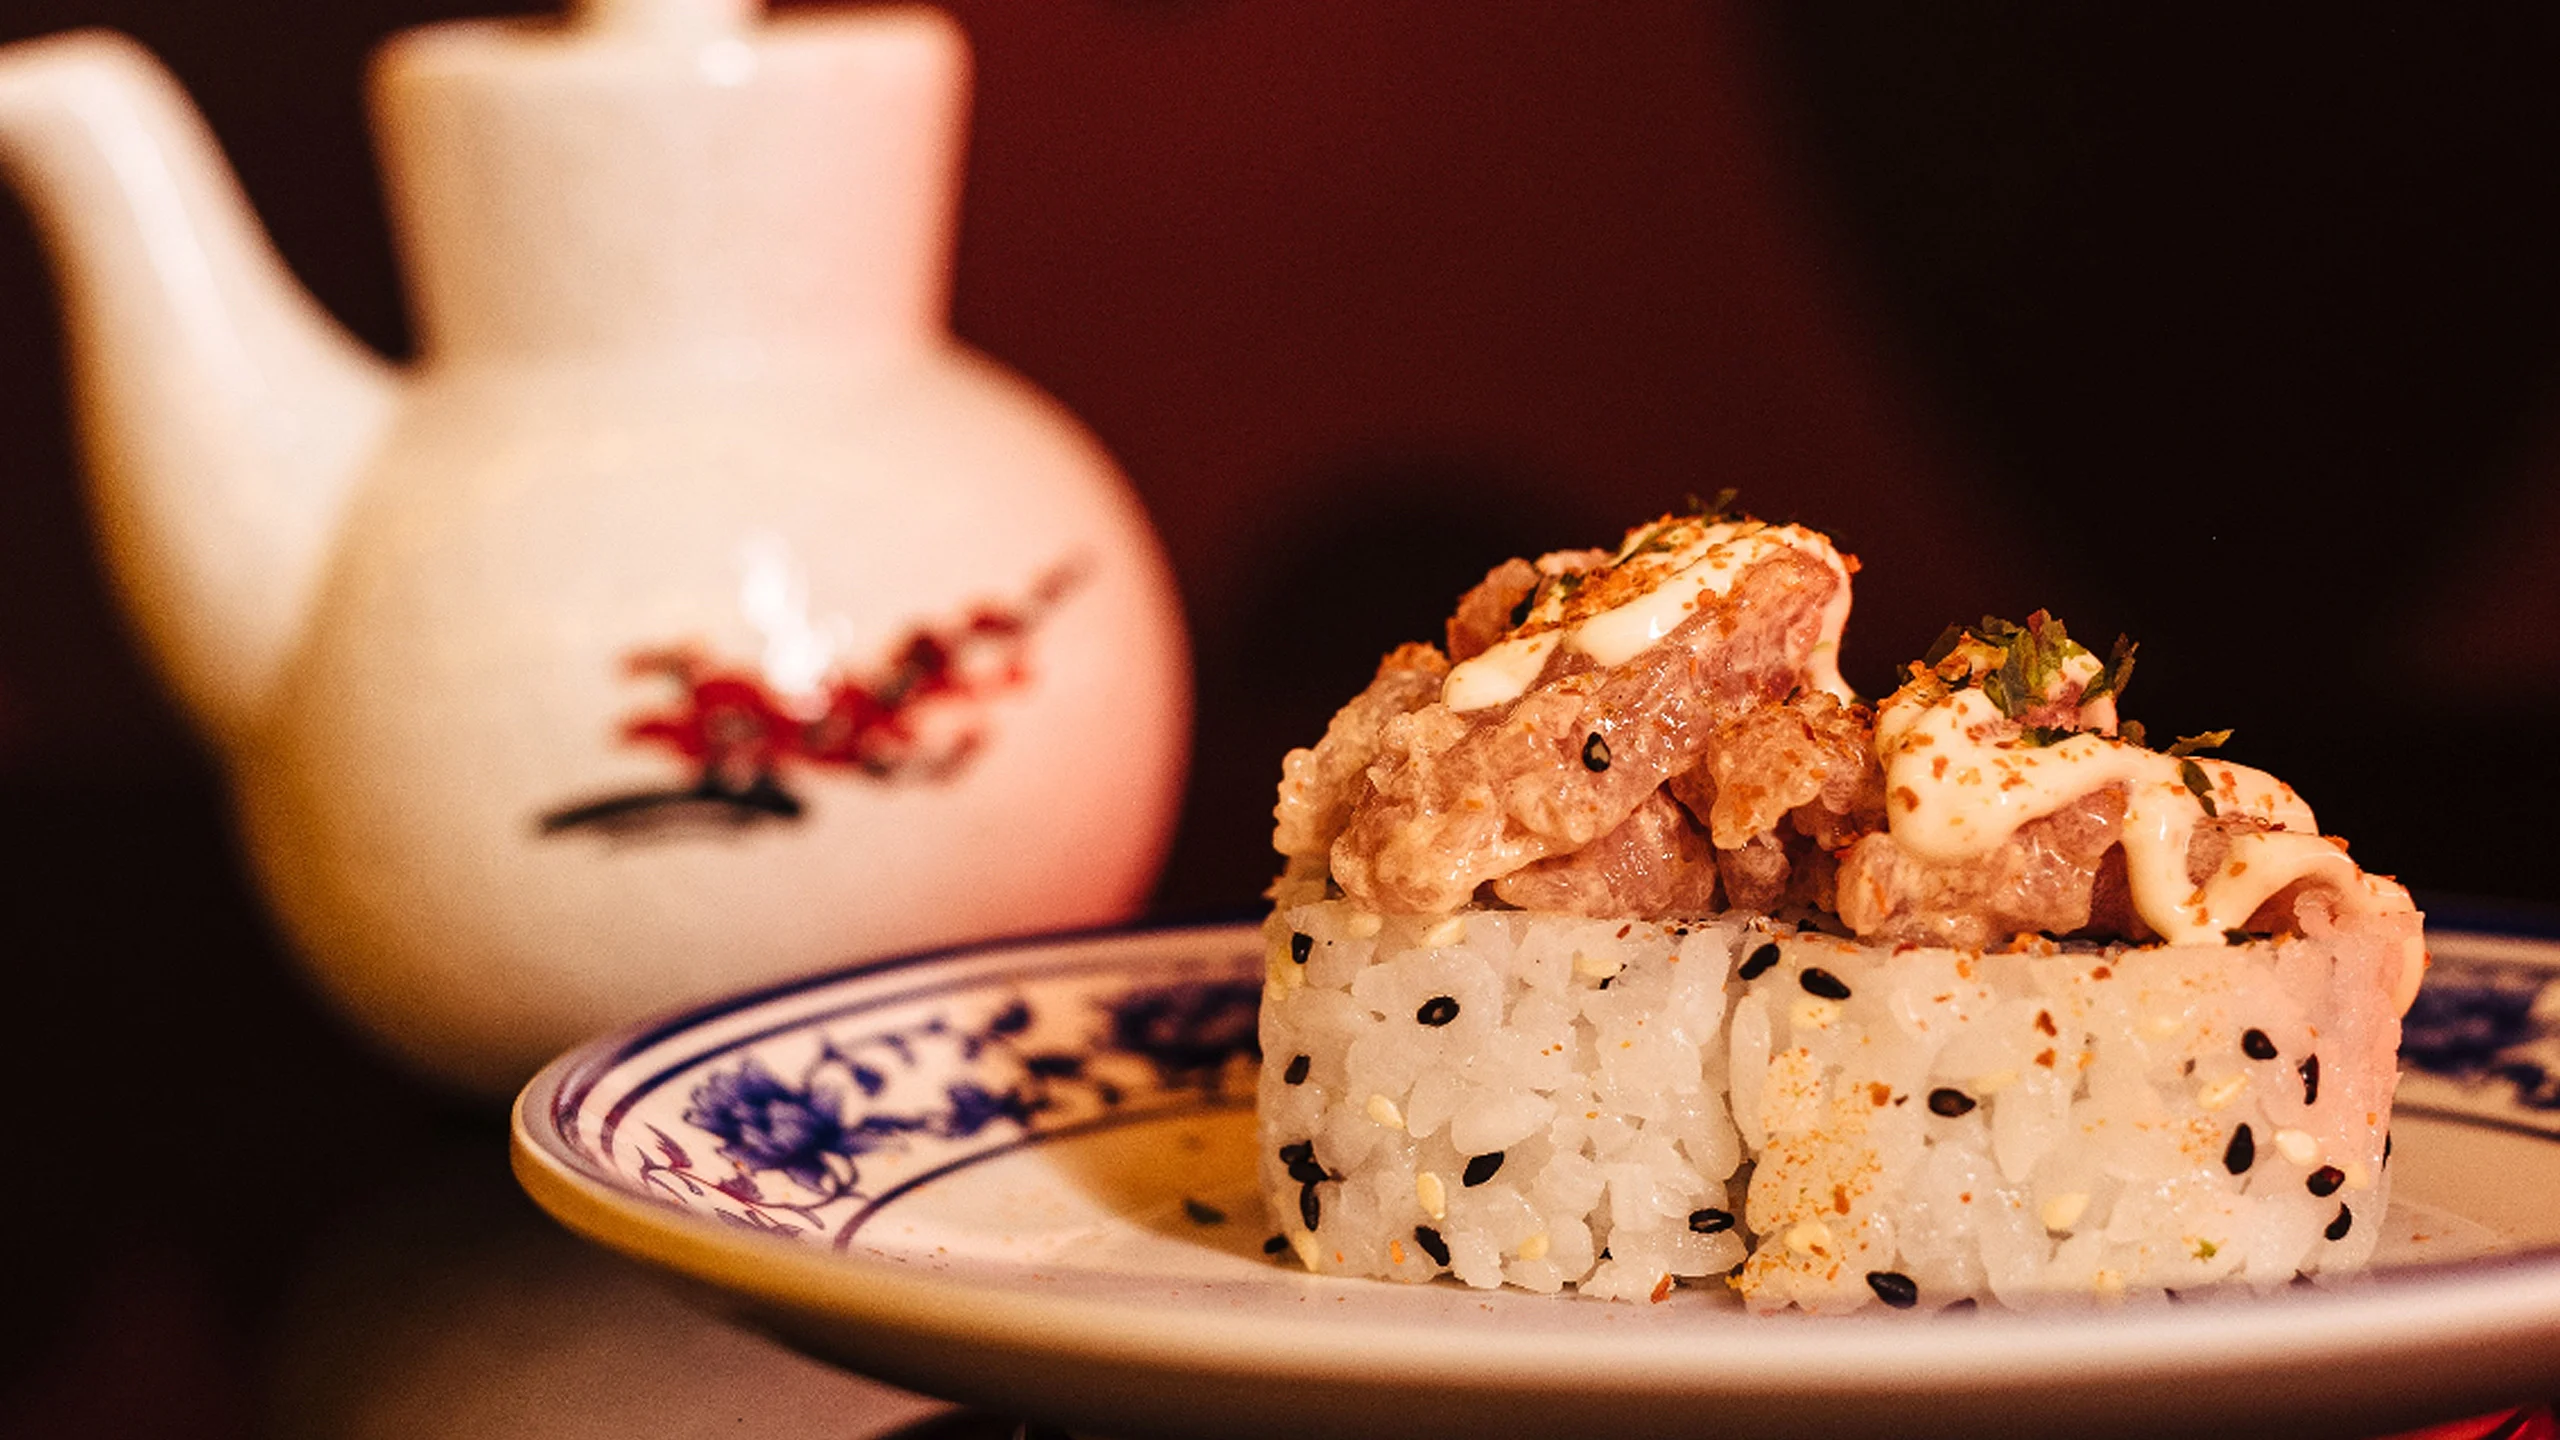 El restaurante temático de sushi en Madrid que está ambientado en “Alicia en el país de las maravillas”